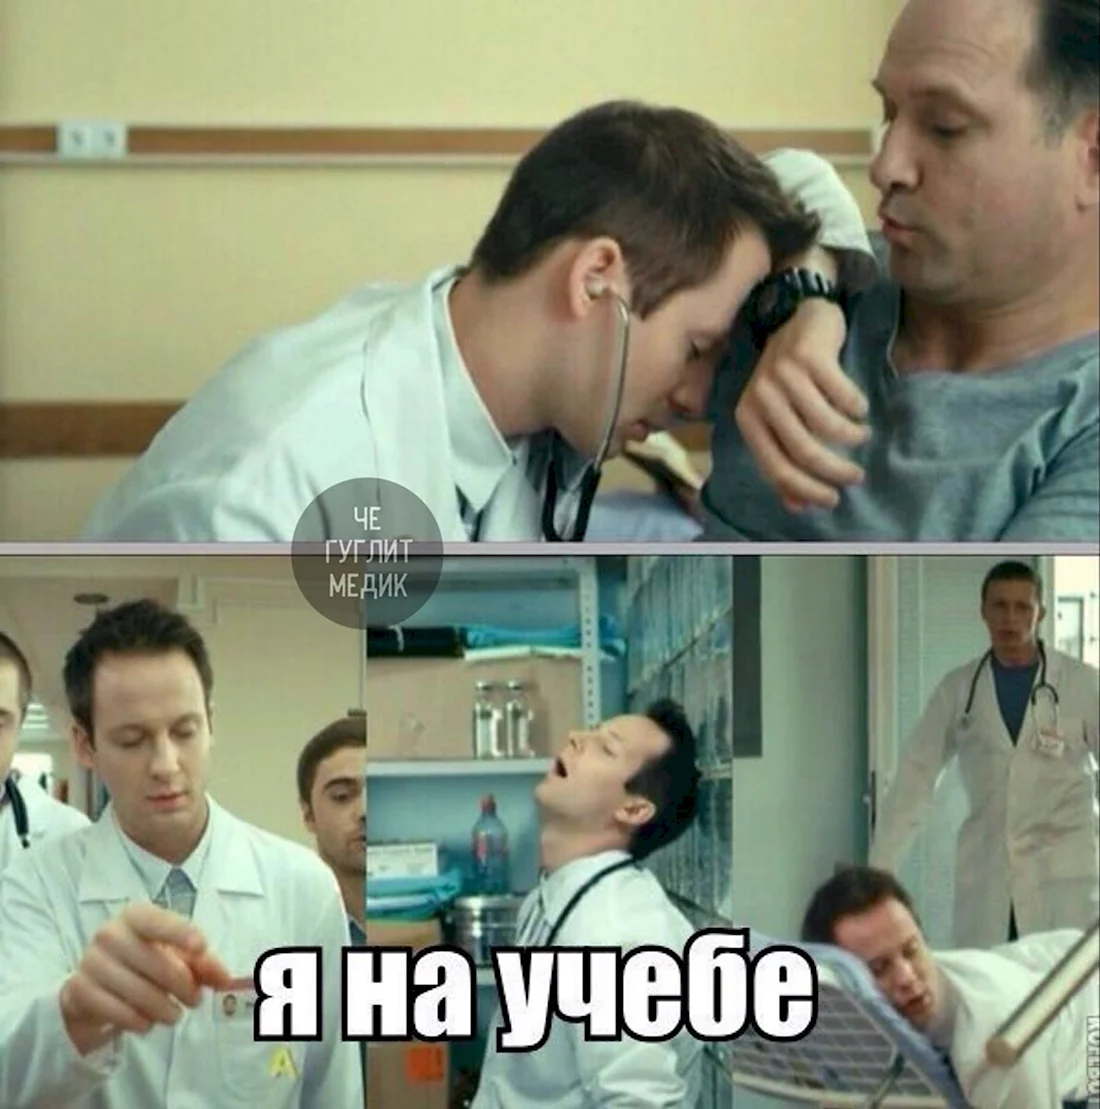 Мемы про учебу в медицинском